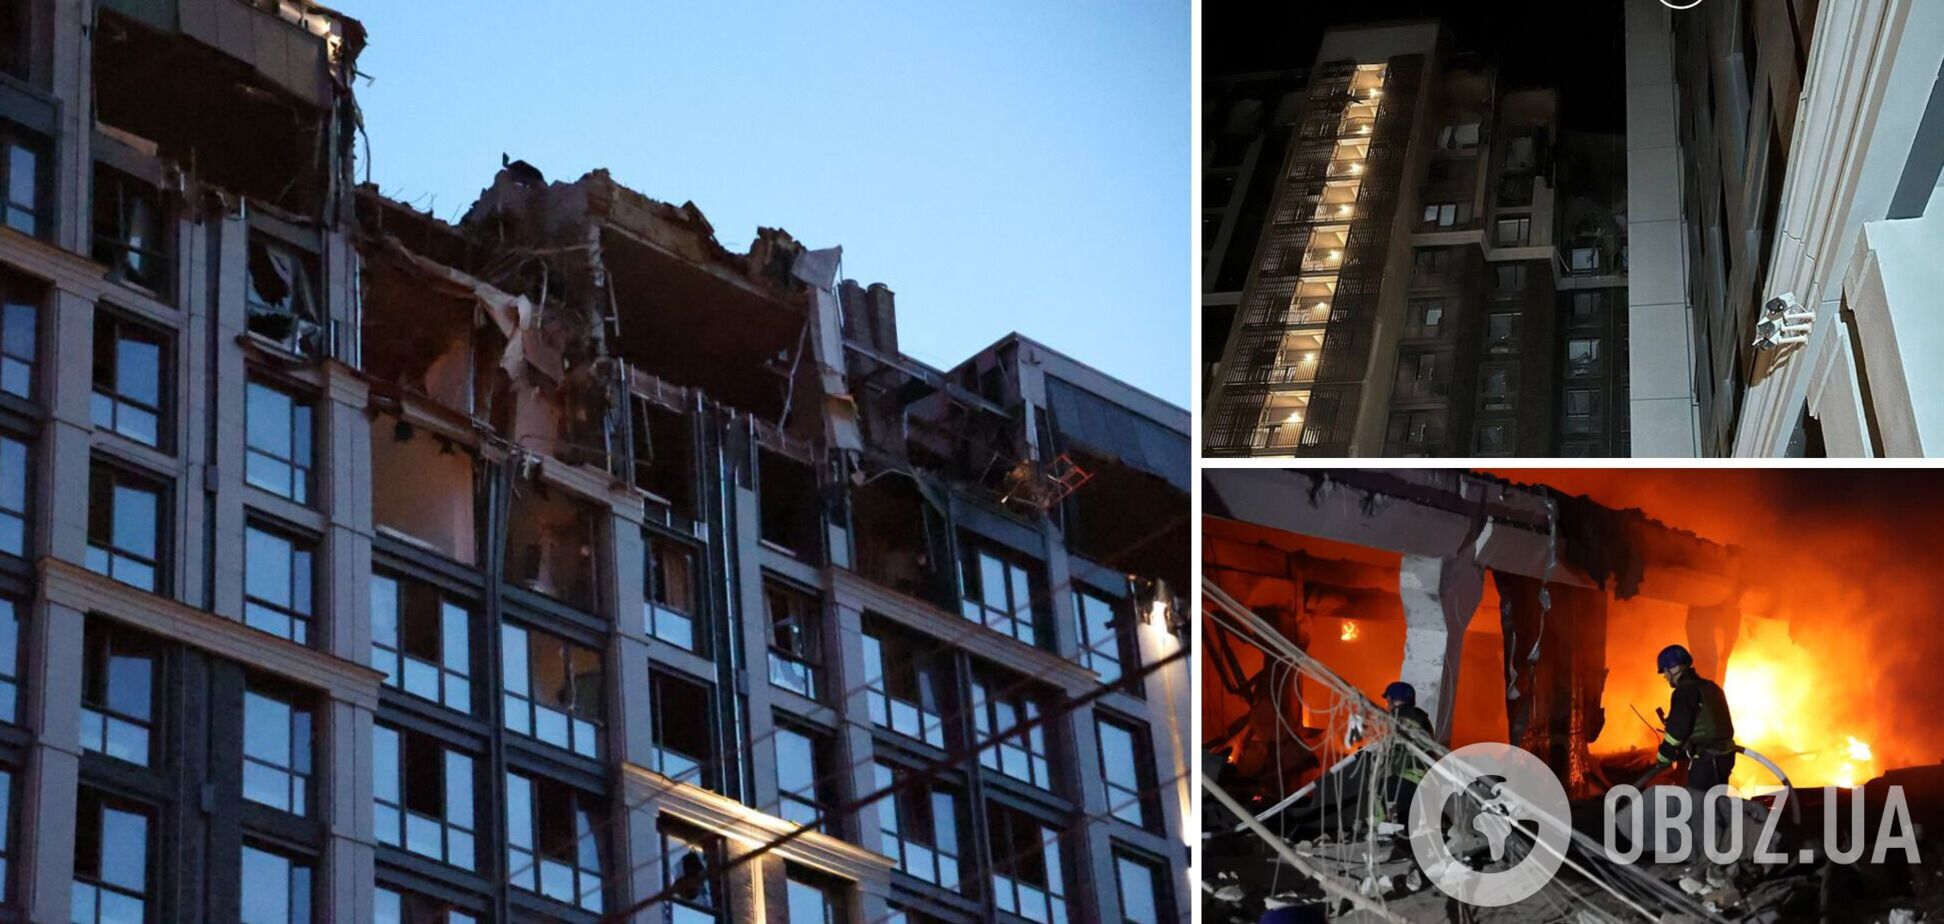 Верхние этажи новостройки в Днепре, куда попала российская ракета, были незаселены: никто не погиб